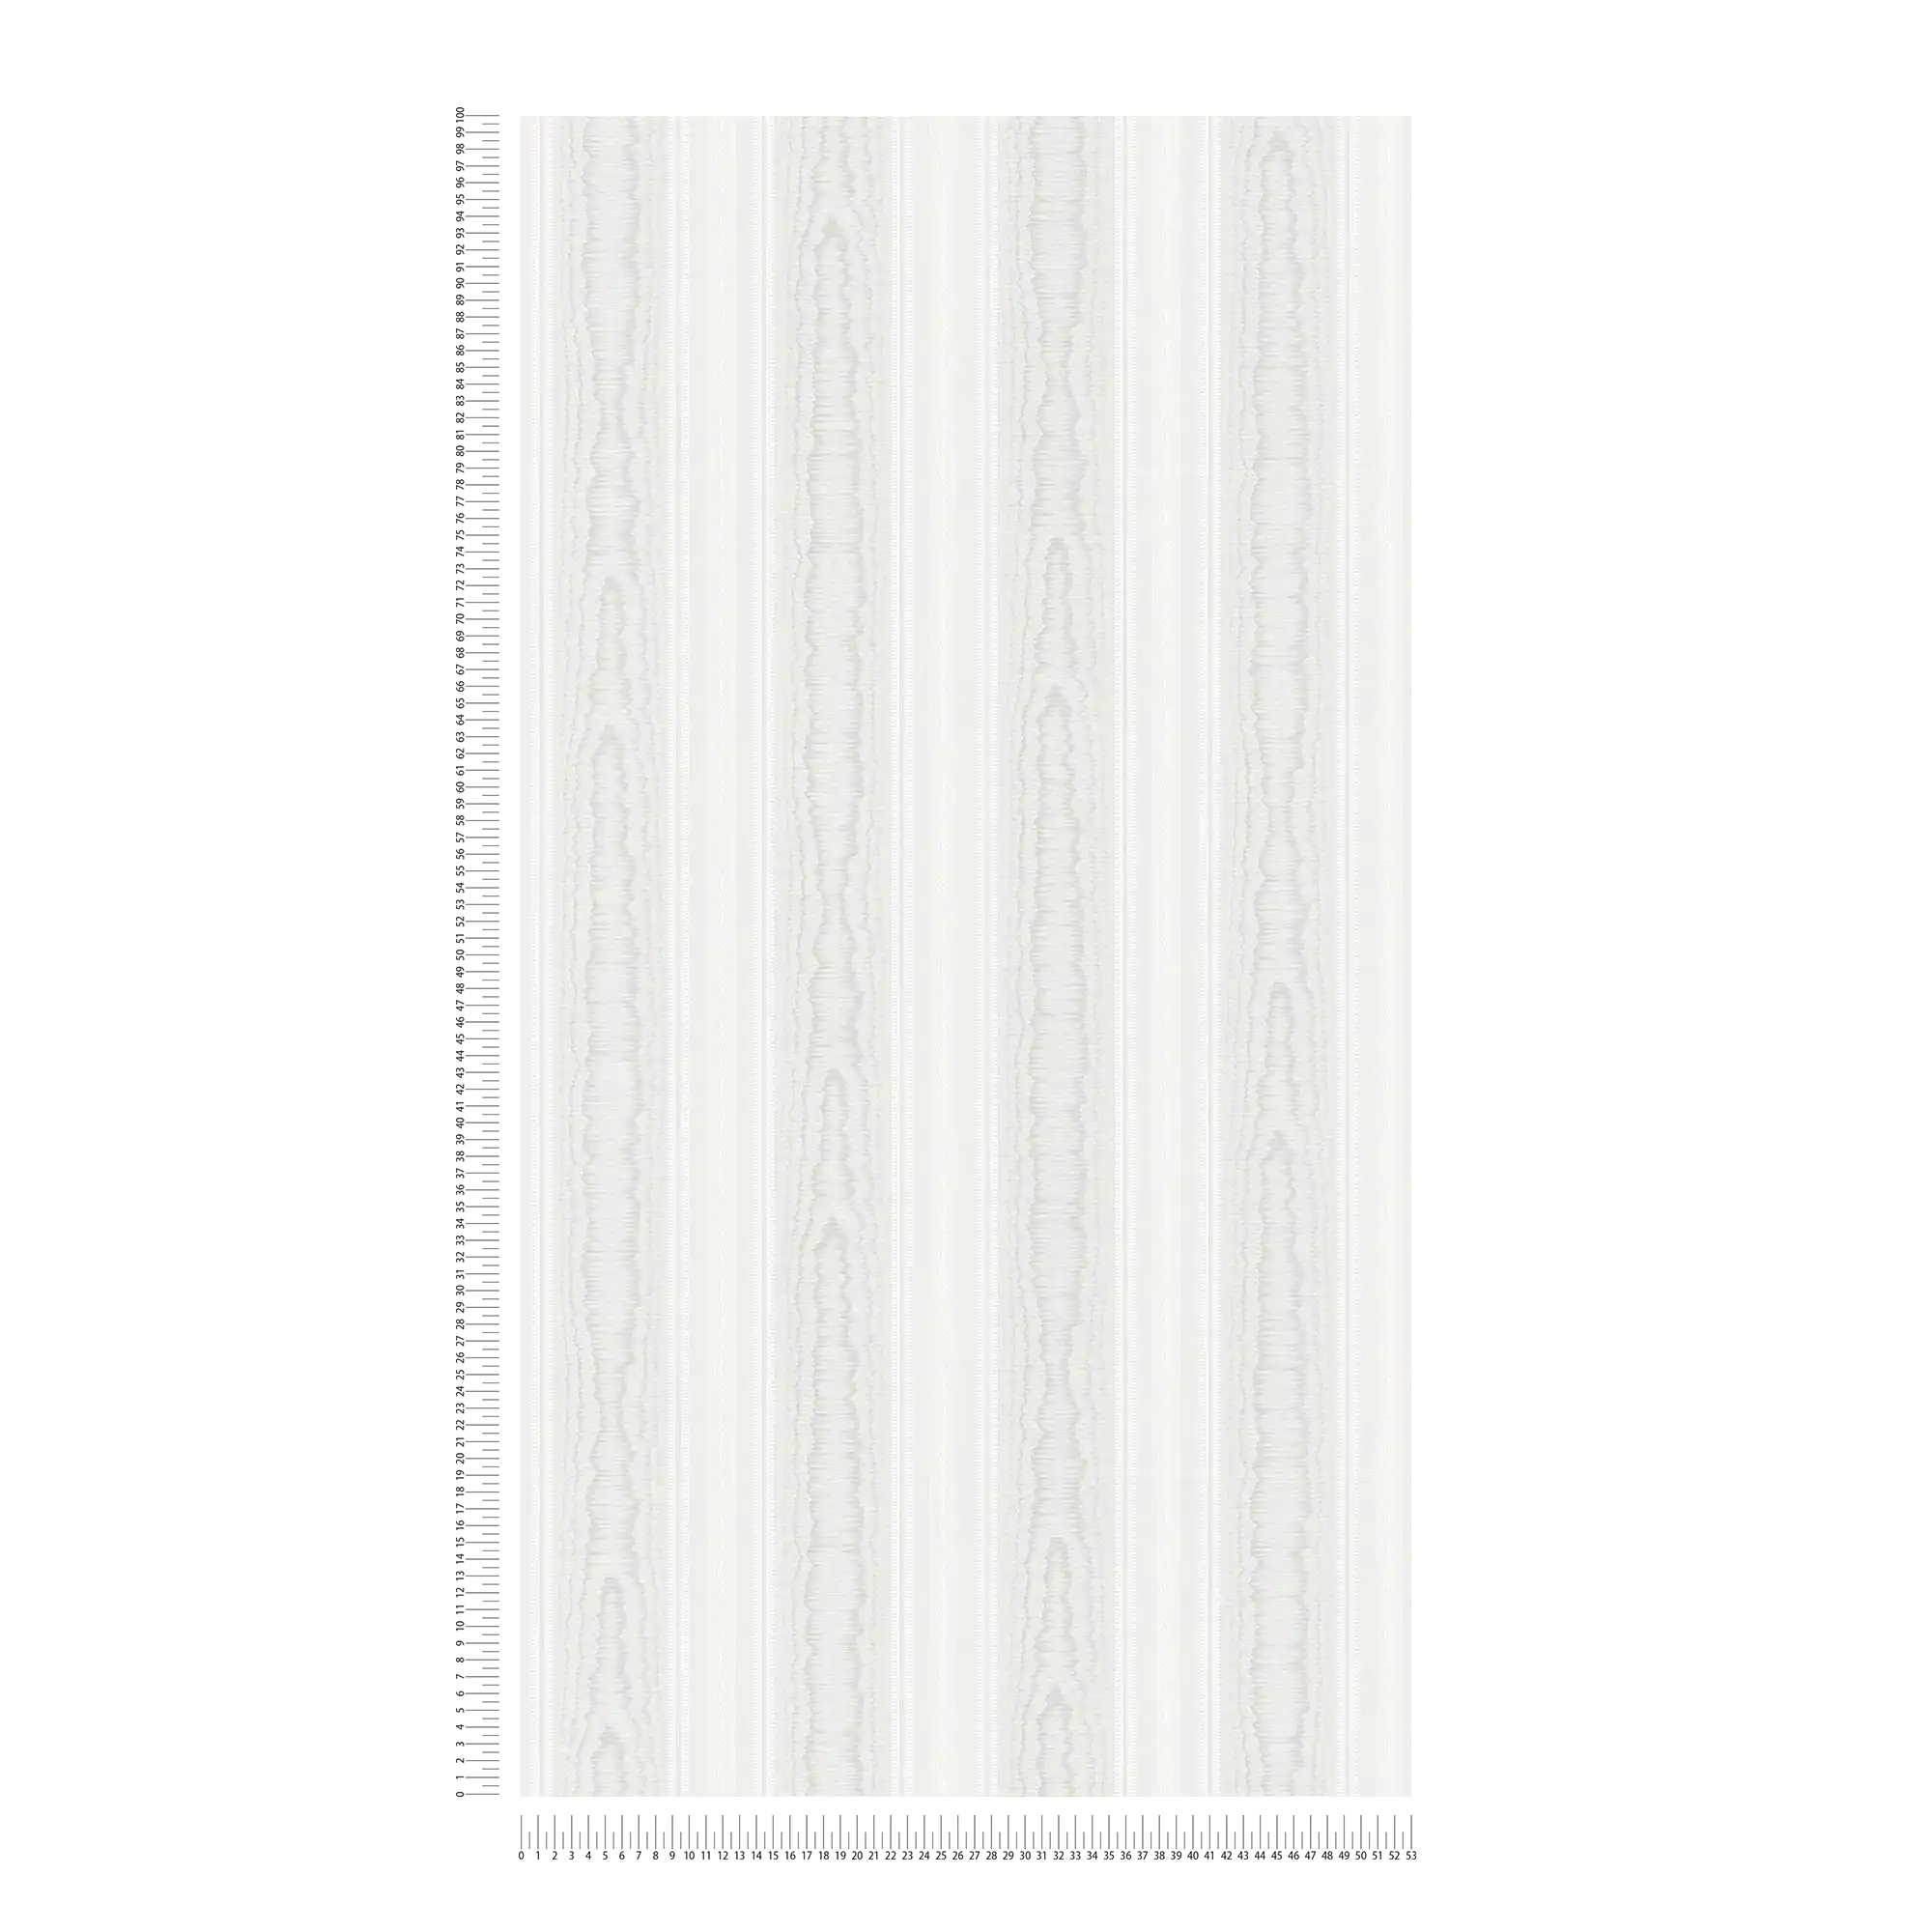             Papier peint à rayures à motifs imitation bois - crème, blanc
        